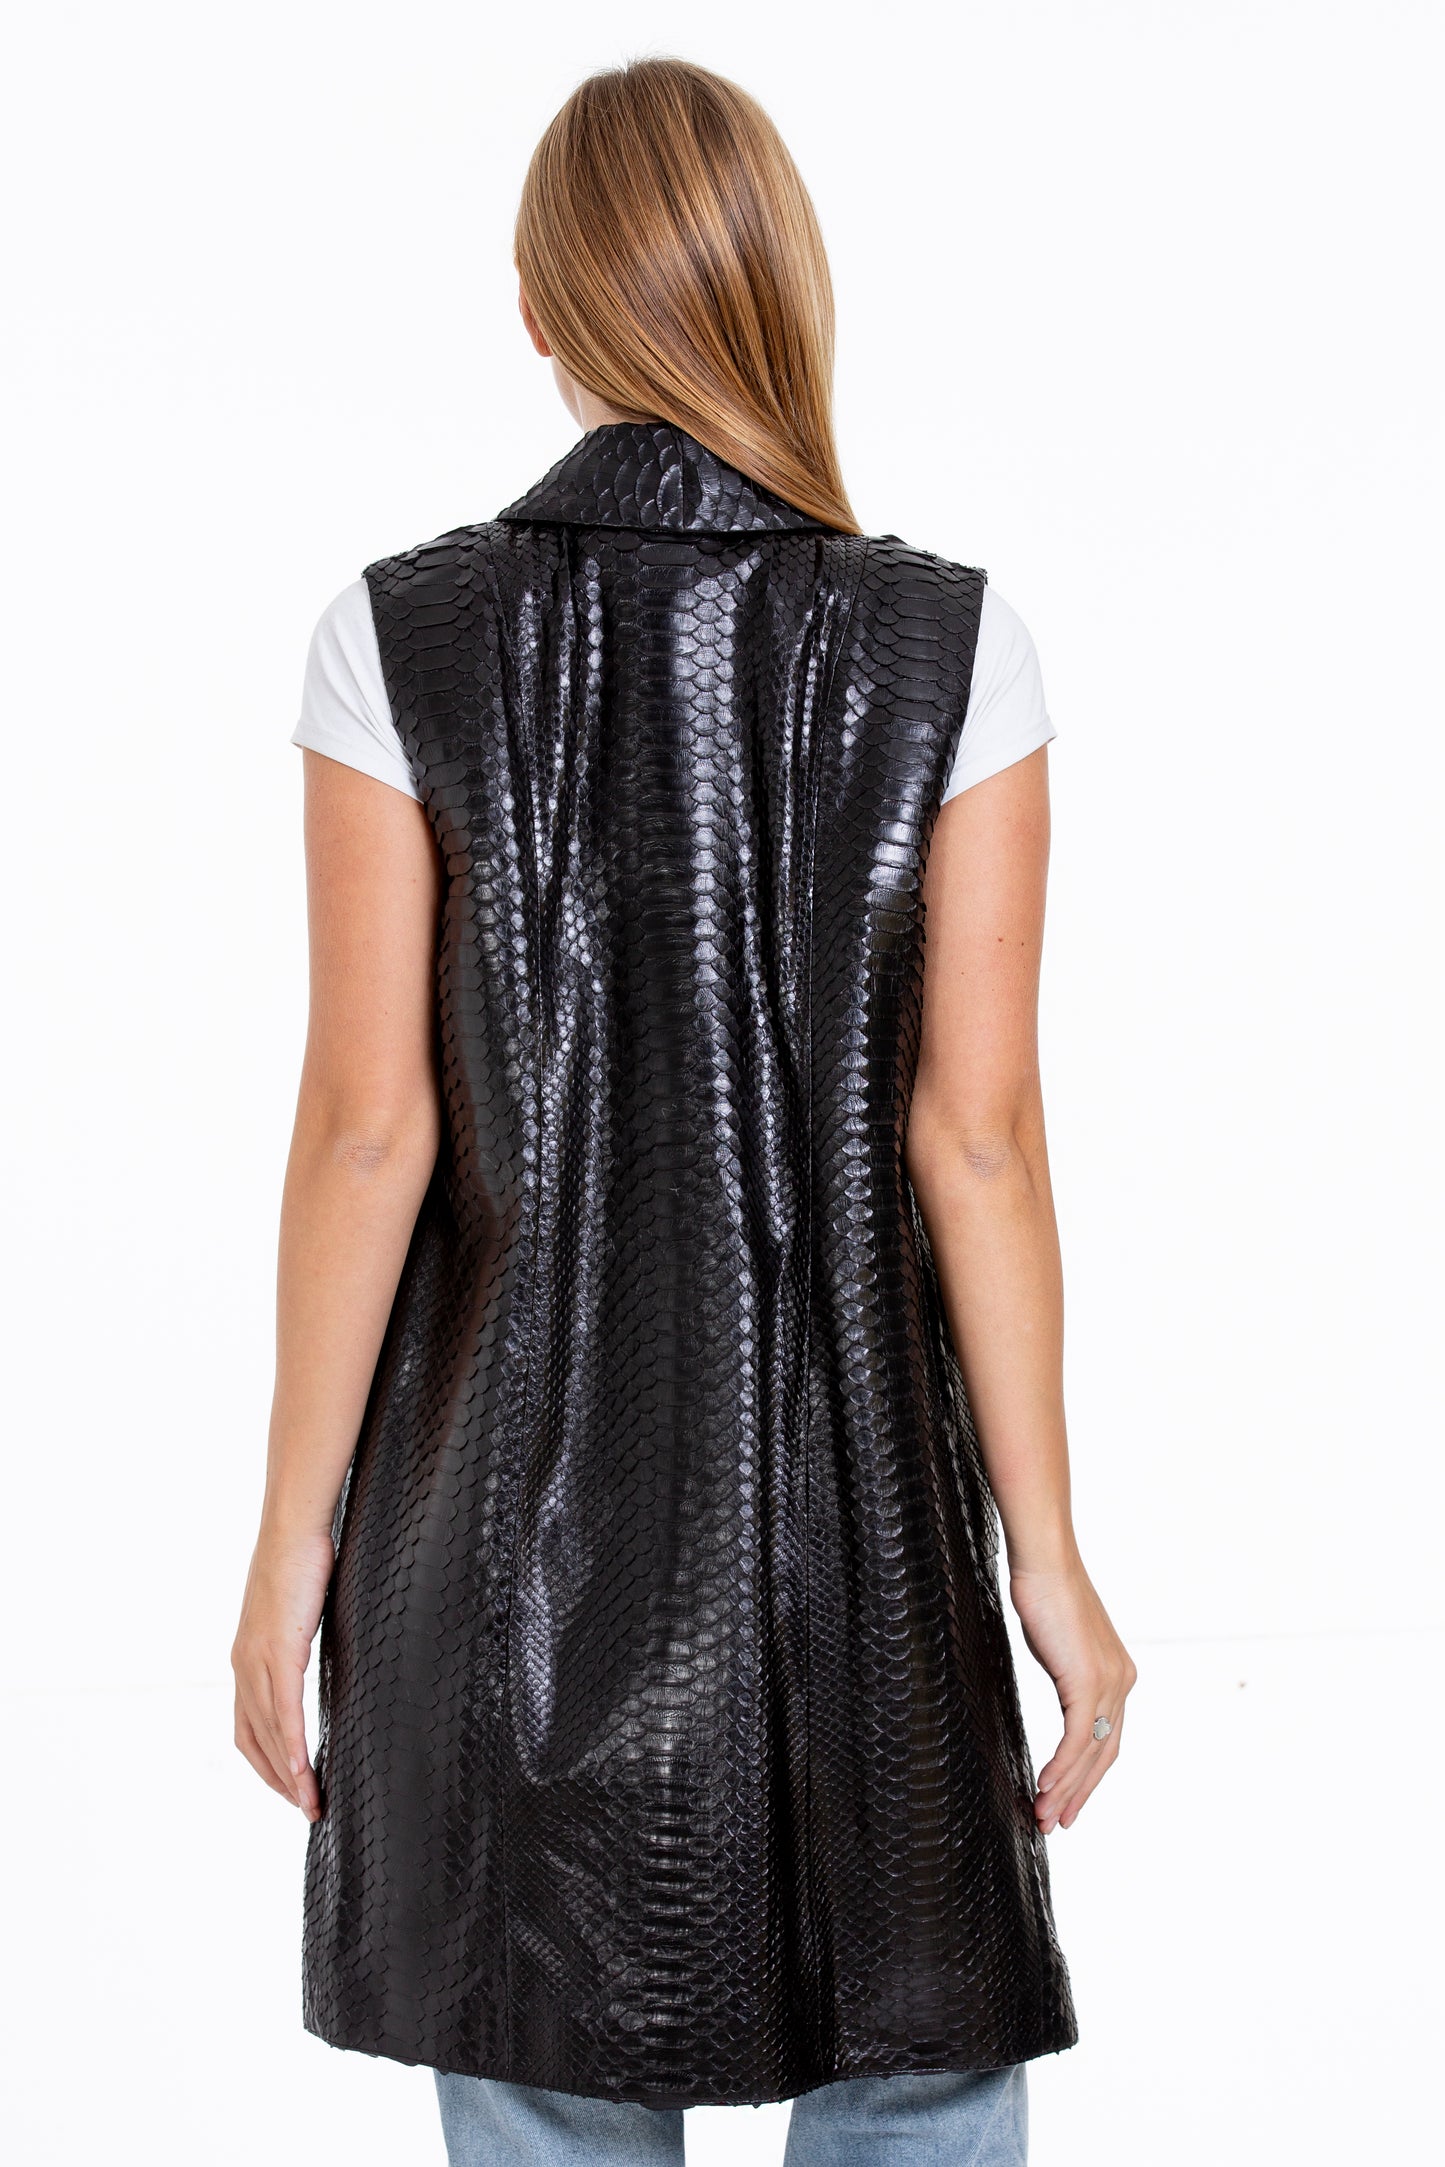 The Medellin Pythn Skin Leather Black Zip-Up Vest